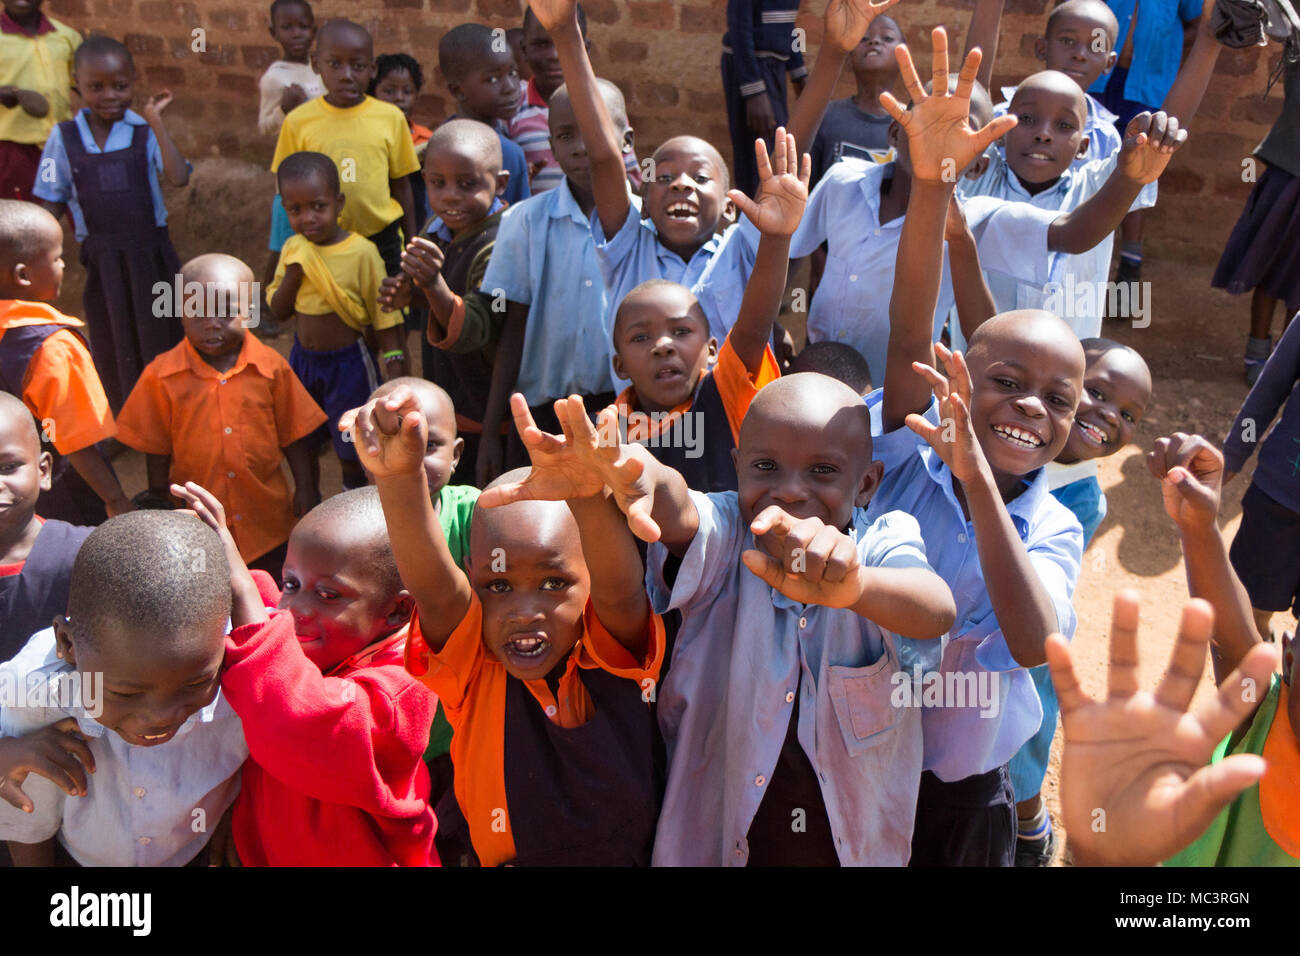 L'Ouganda. 13 juin 2017. Un groupe d'heureux enfants d'une école primaire sourire, rire et forme dans une école primaire. Banque D'Images